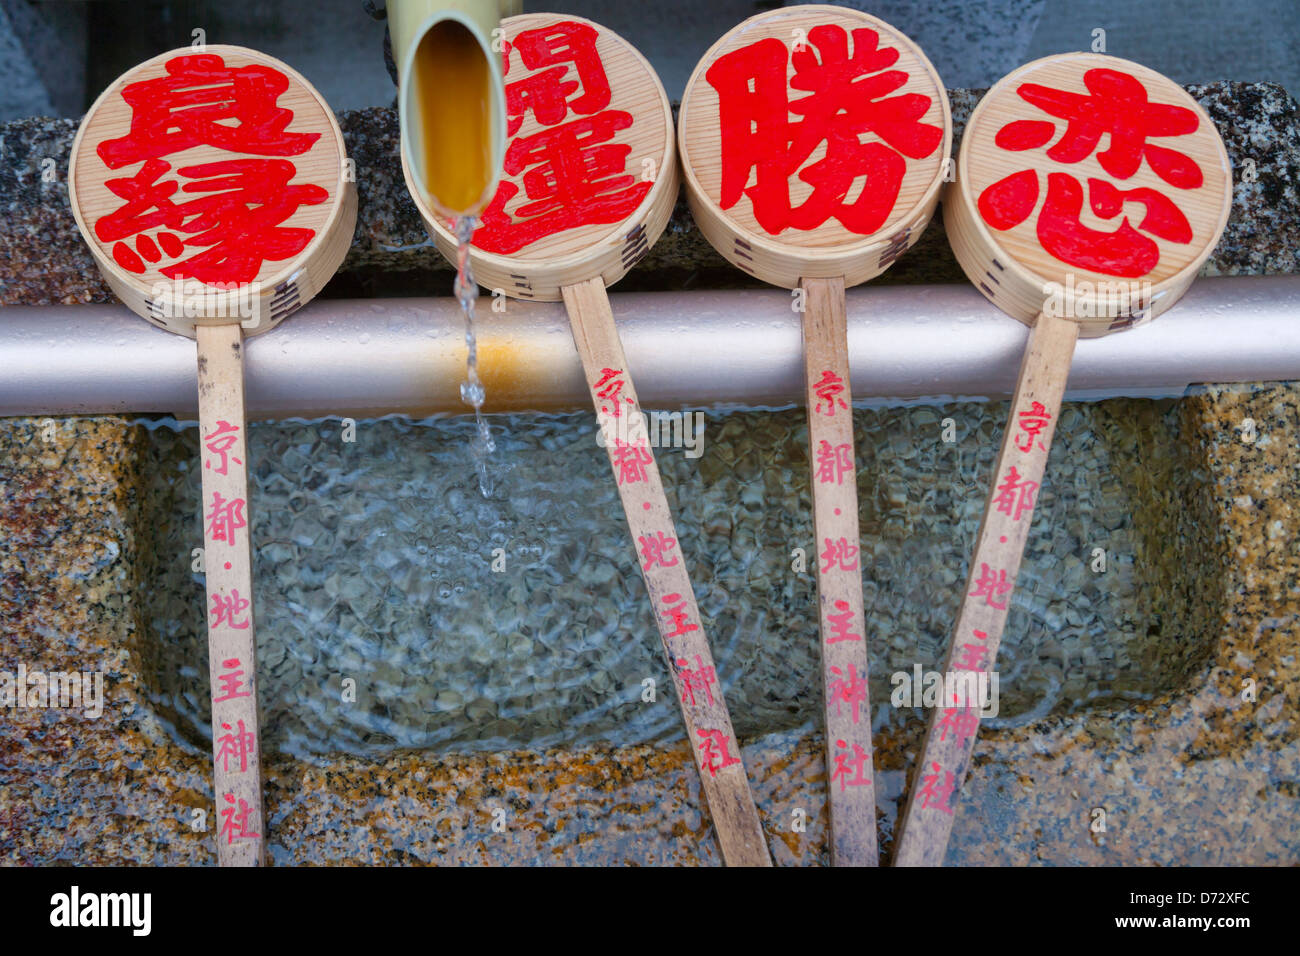 Lavabo au Temple Kiyomizu dans la pluie, sites du patrimoine culturel, Kyoto, Japon Banque D'Images